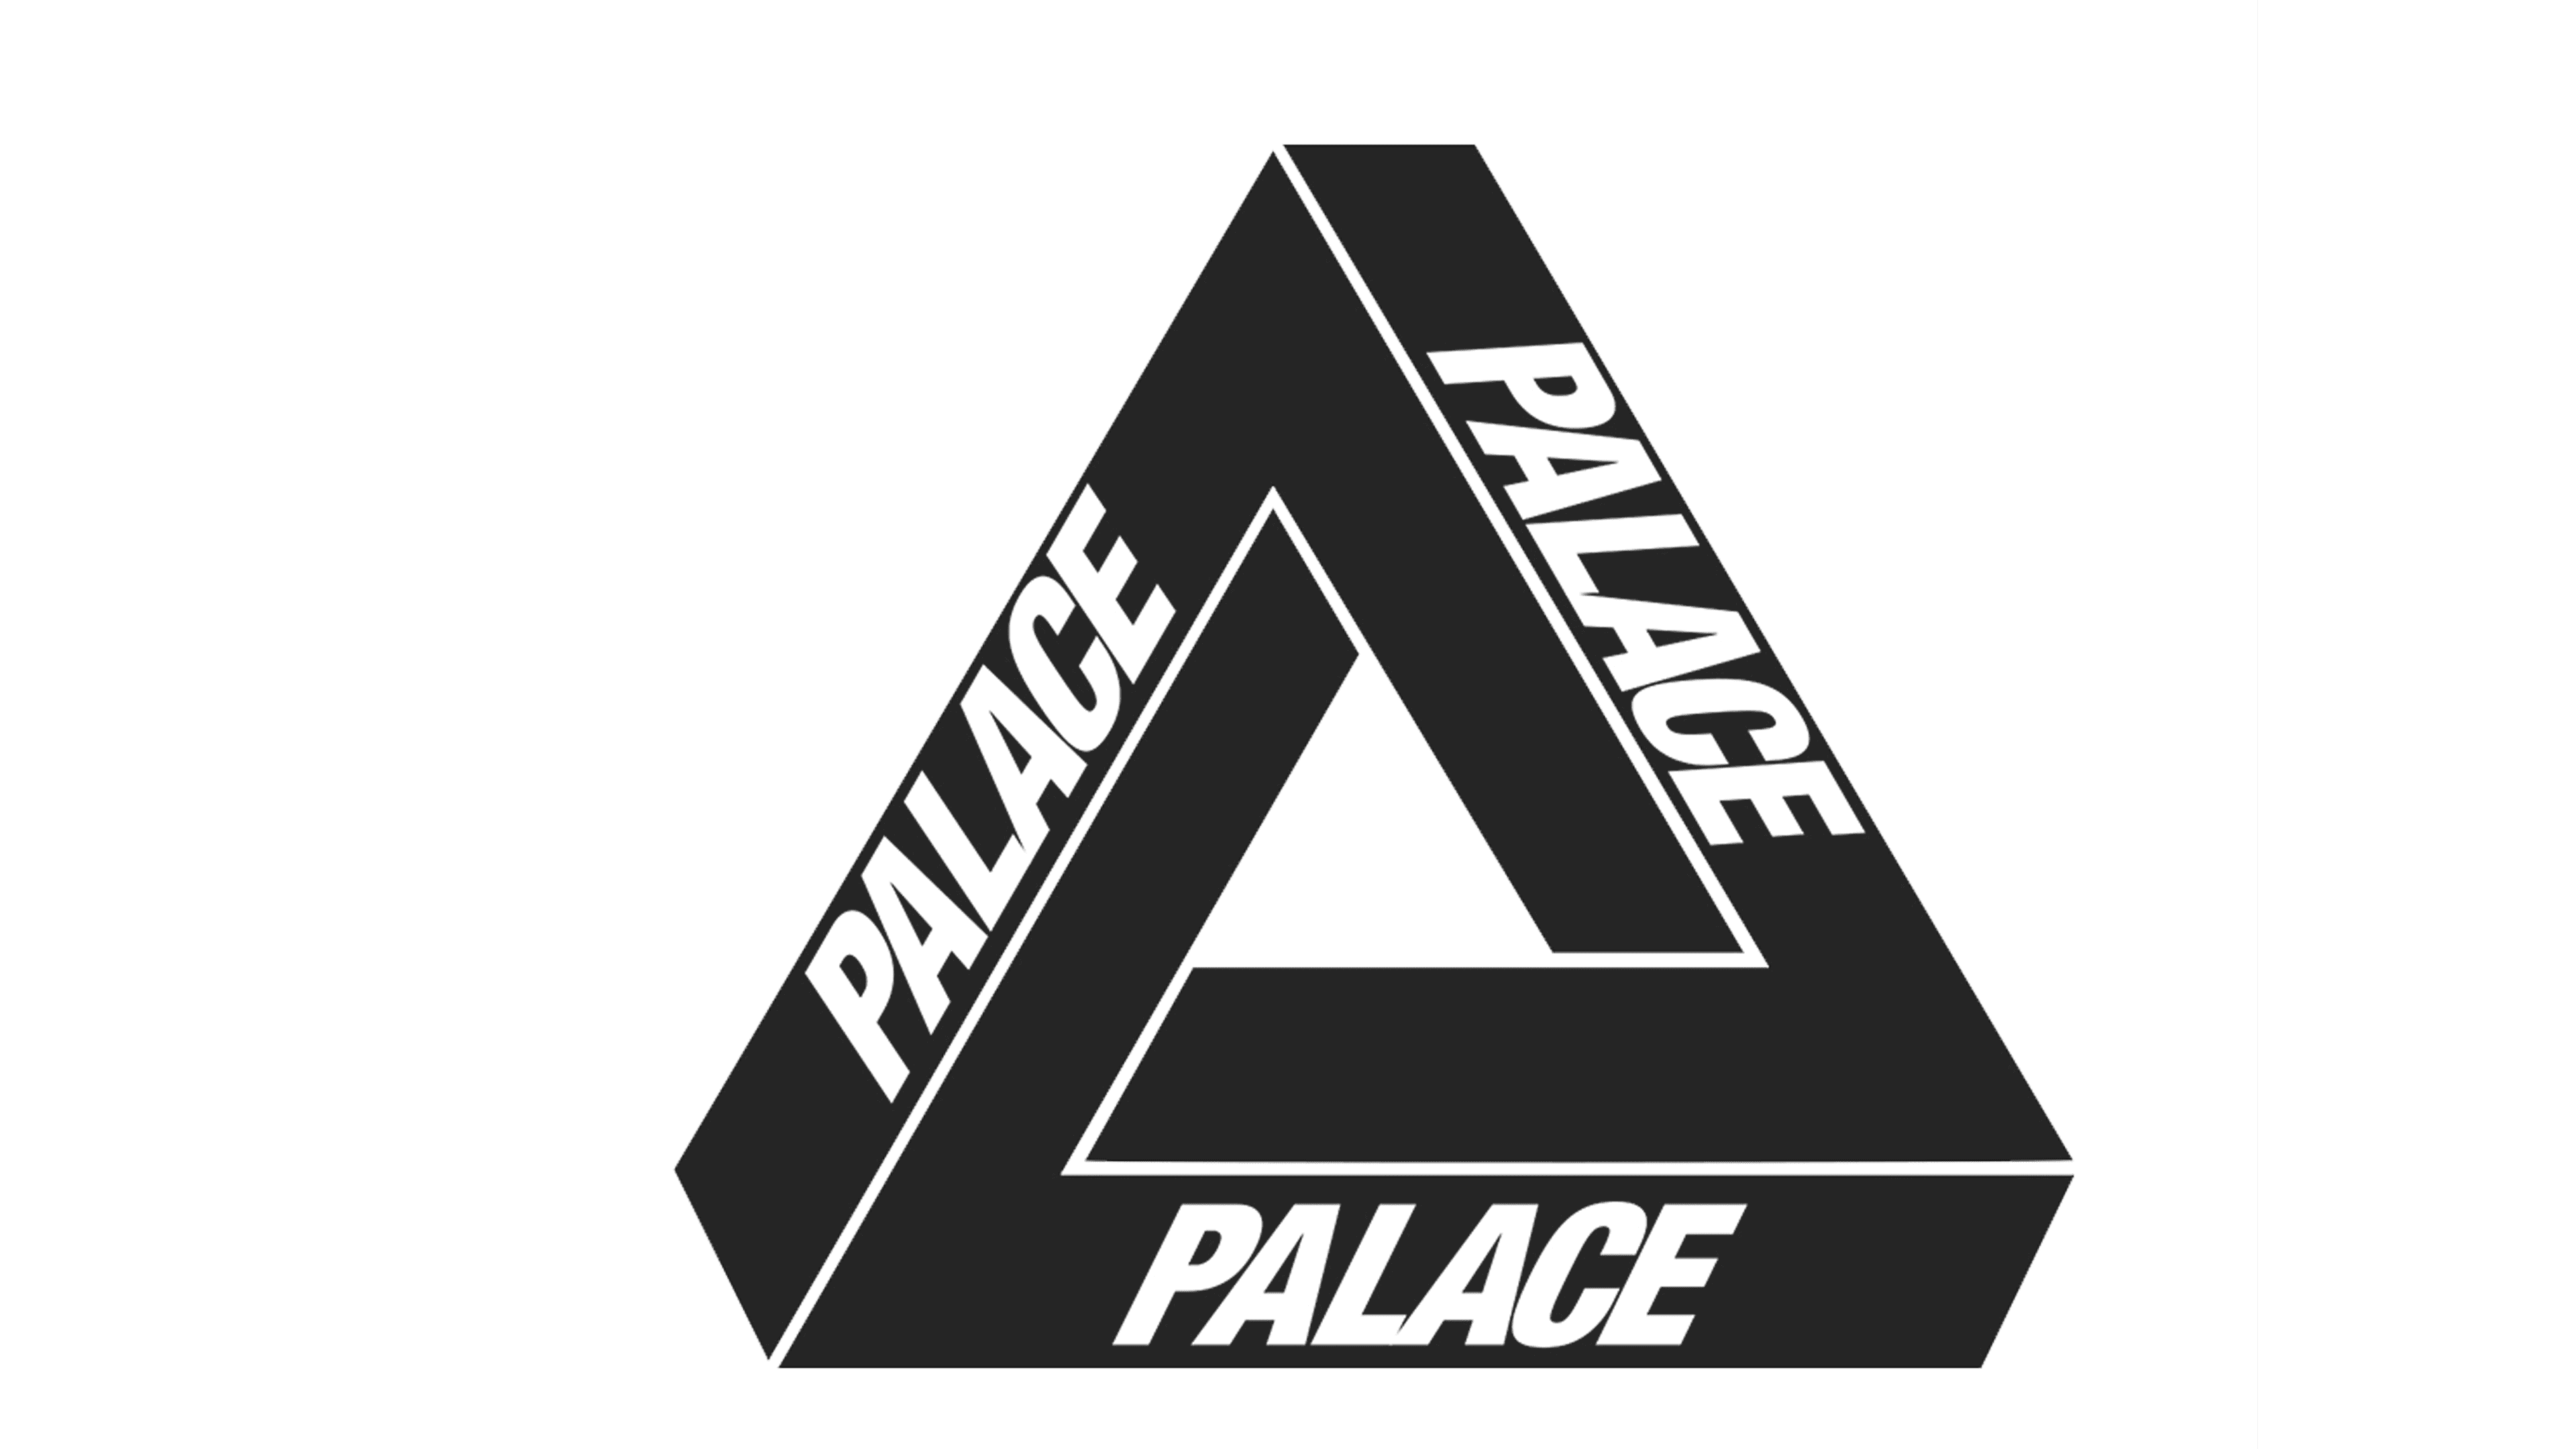 Xem ngay hơn 84+ logo palace đẹp nhất - B1 | Business One